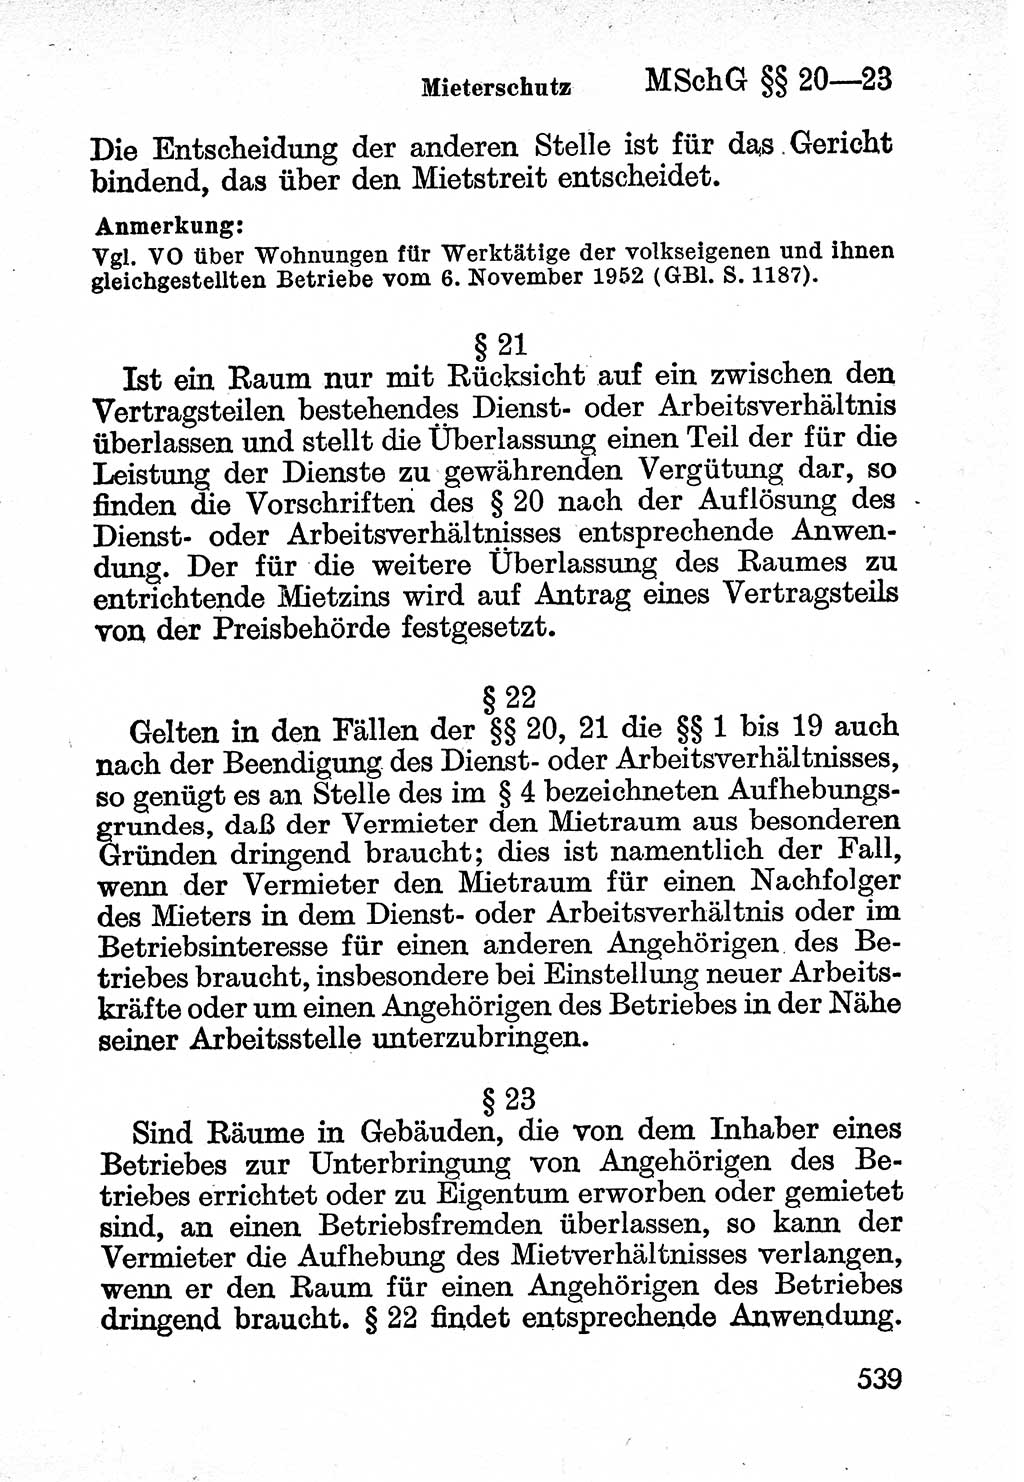 Bürgerliches Gesetzbuch (BGB) nebst wichtigen Nebengesetzen [Deutsche Demokratische Republik (DDR)] 1956, Seite 539 (BGB Nebenges. DDR 1956, S. 539)